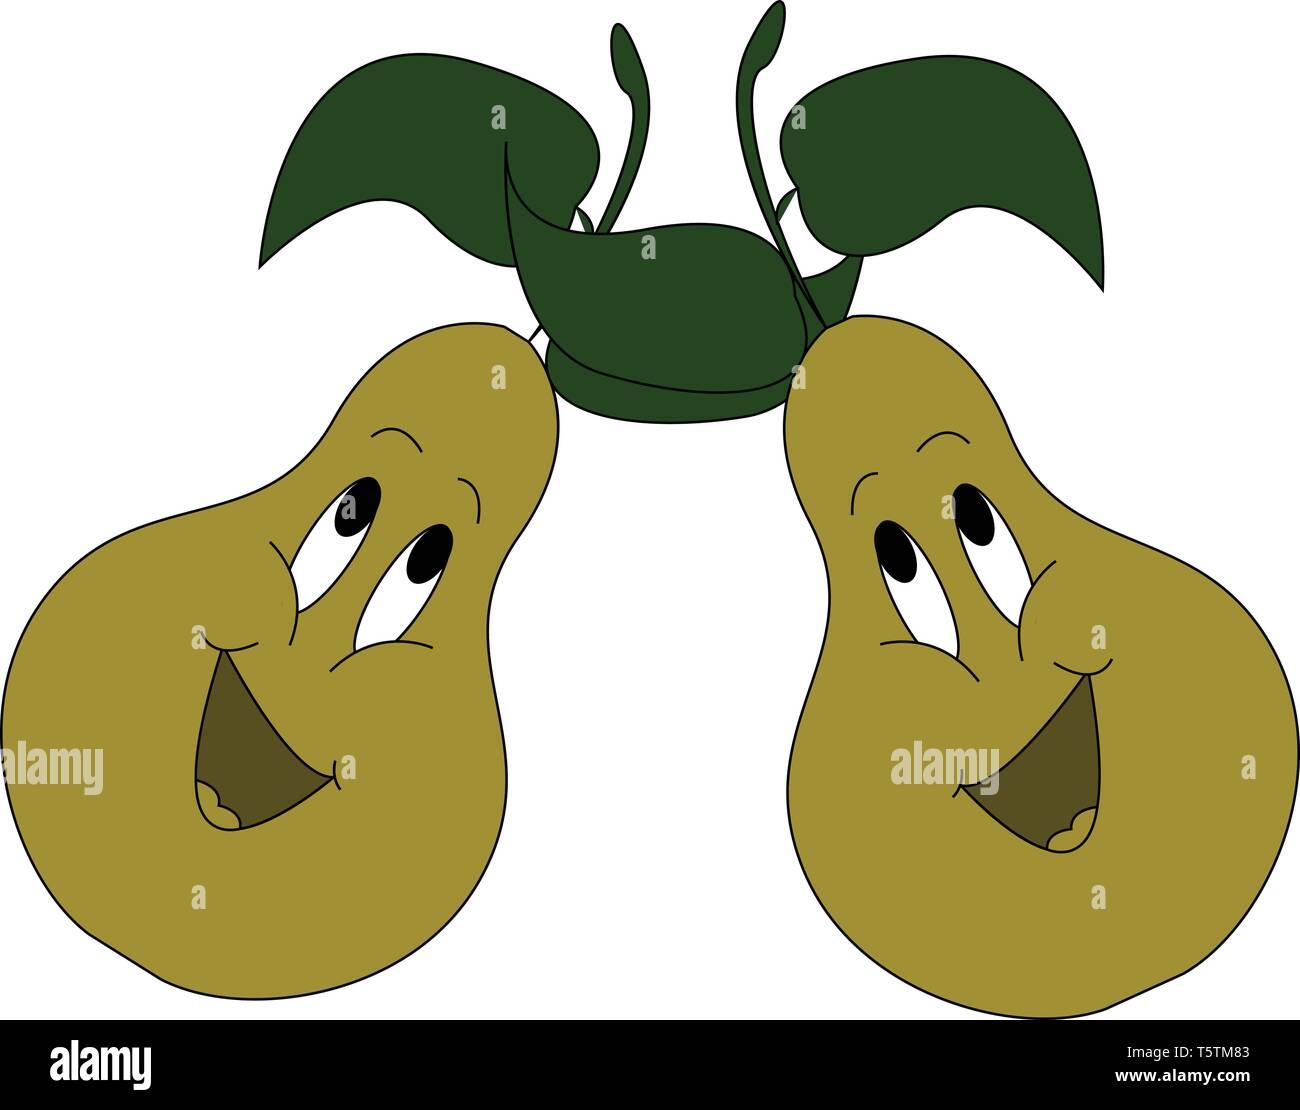 Caricature de chanter deux poires vertes avec des feuilles vertes vector illustration sur fond blanc Illustration de Vecteur